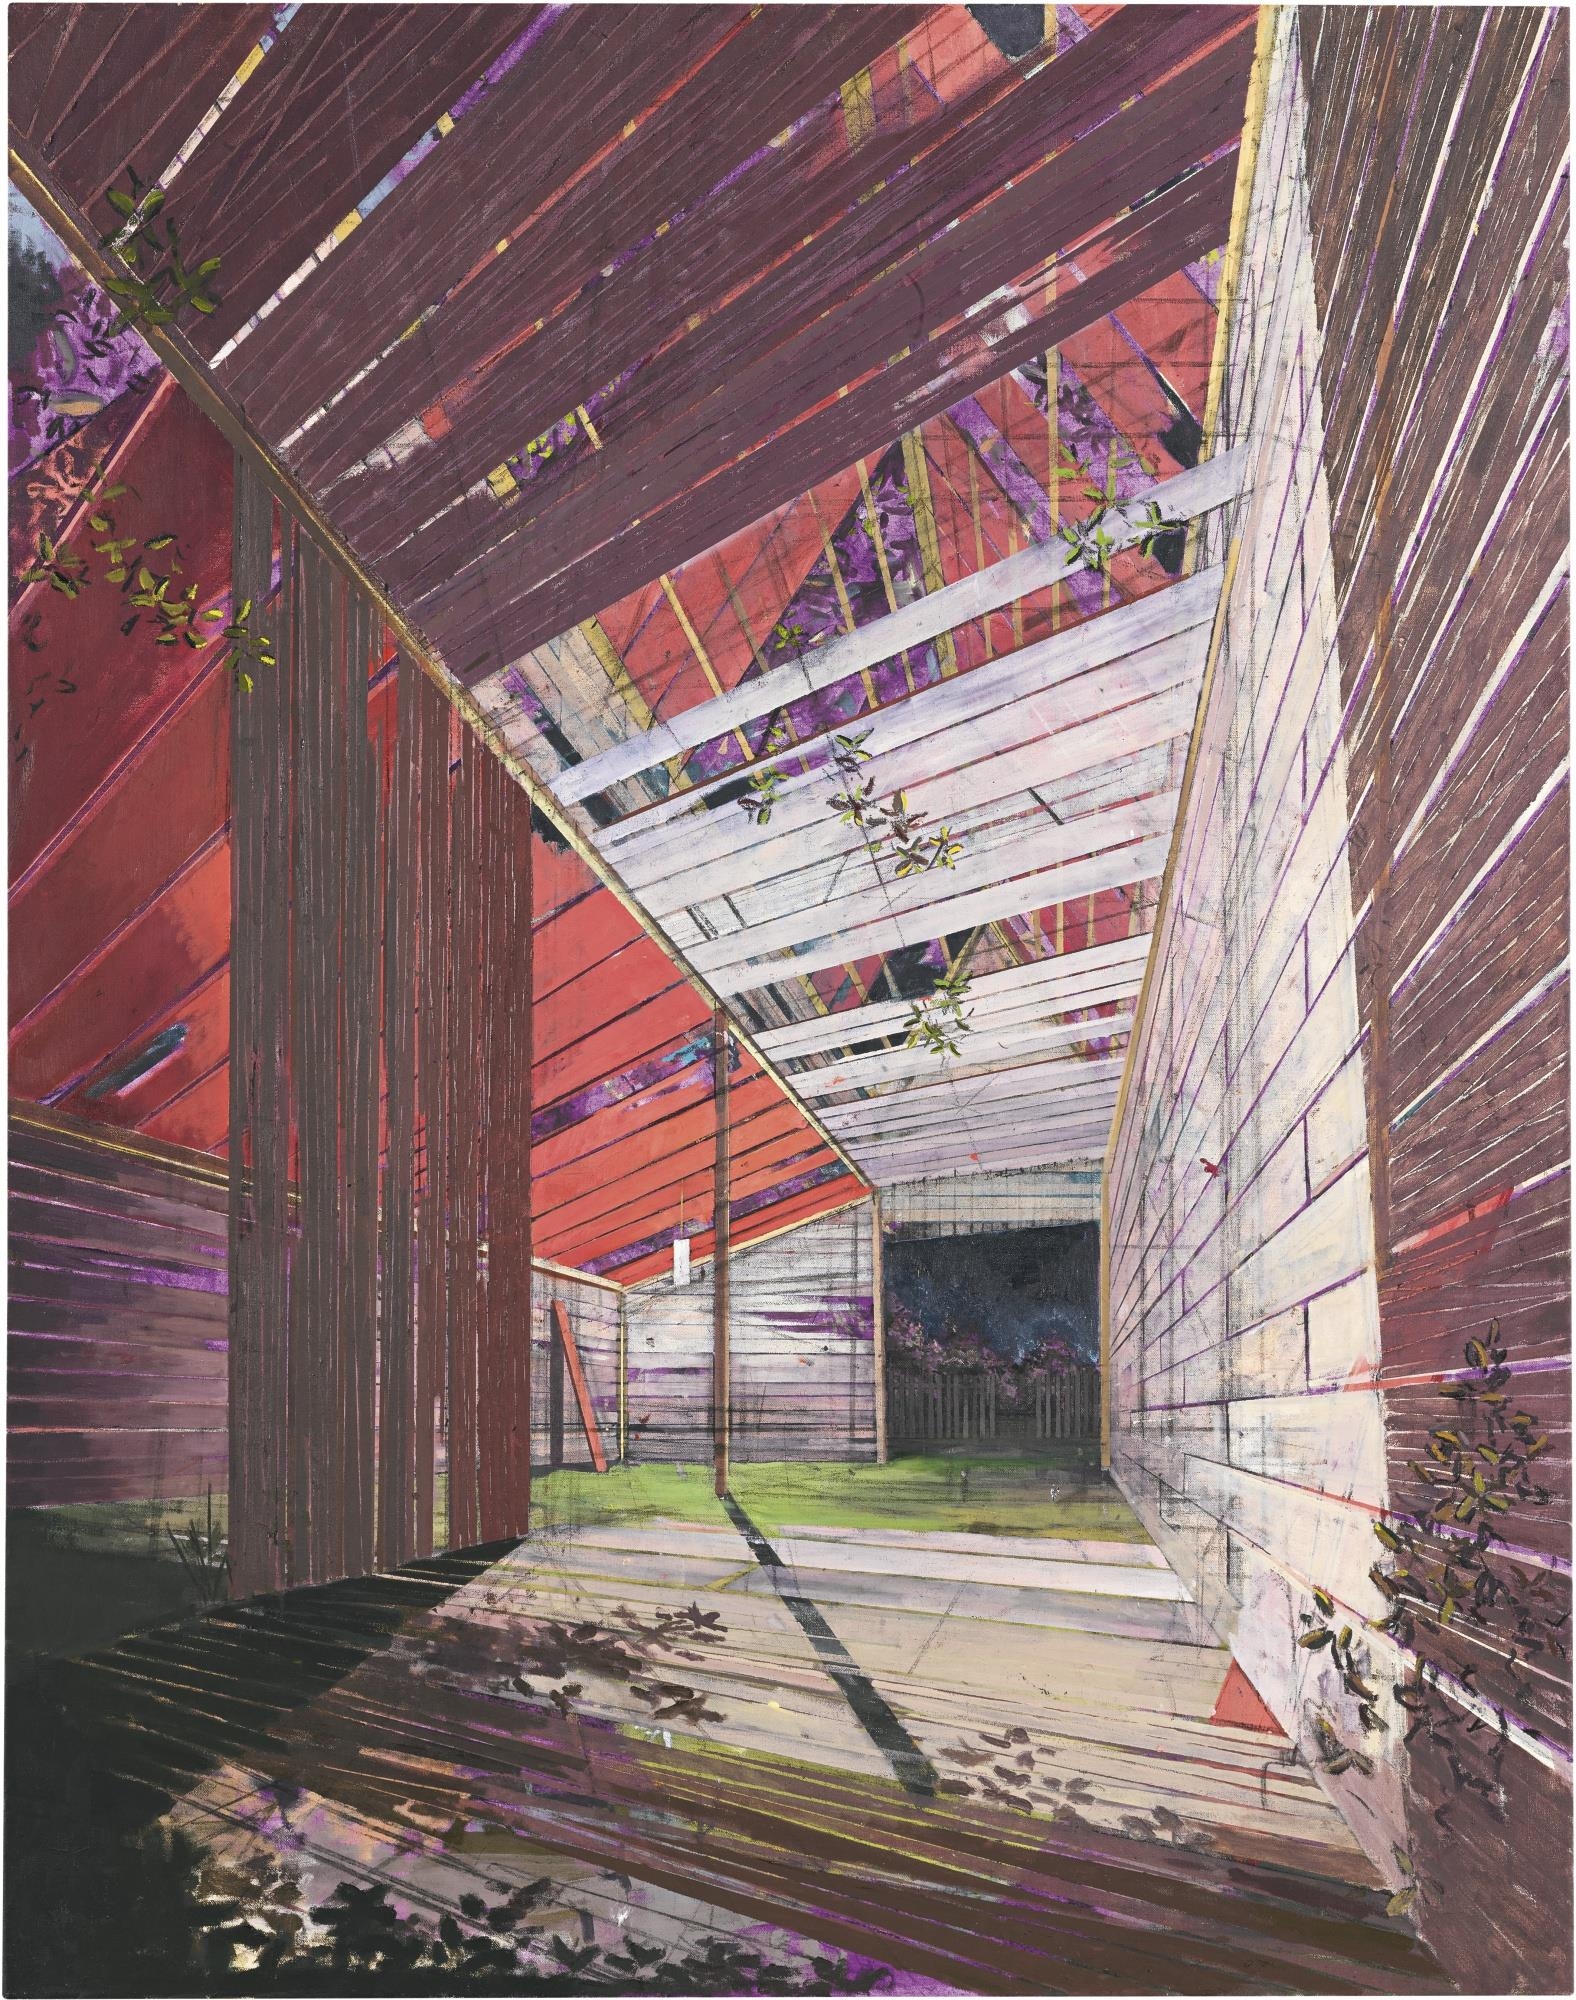 Hütte by David Schnell, 2004